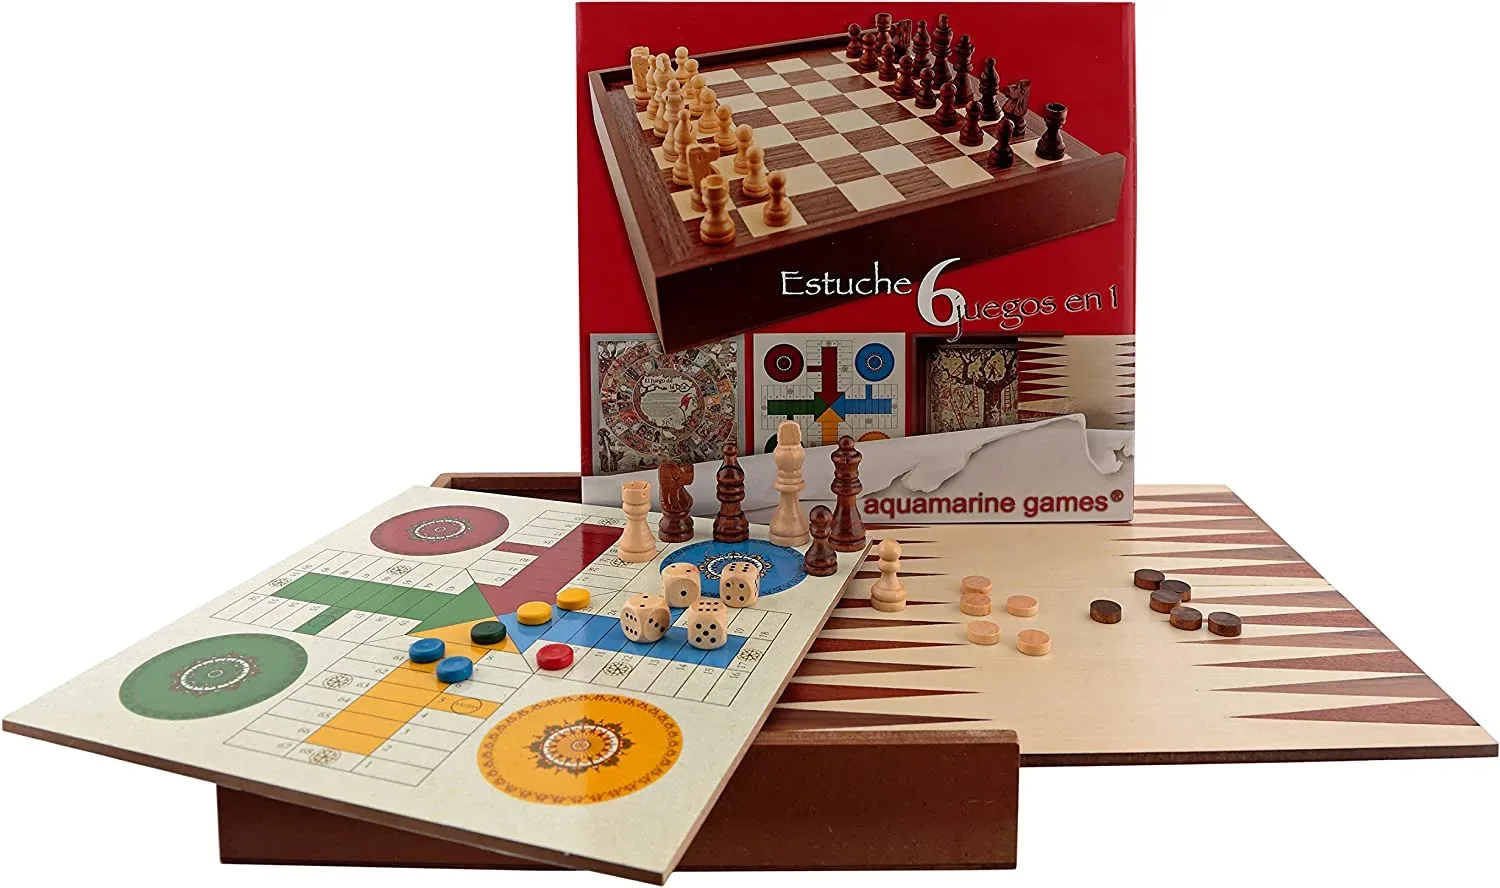 Ver categoría de estuche 6 juegos clásicos: ajedrez, damas, backgammon, oca, parchís, escalera